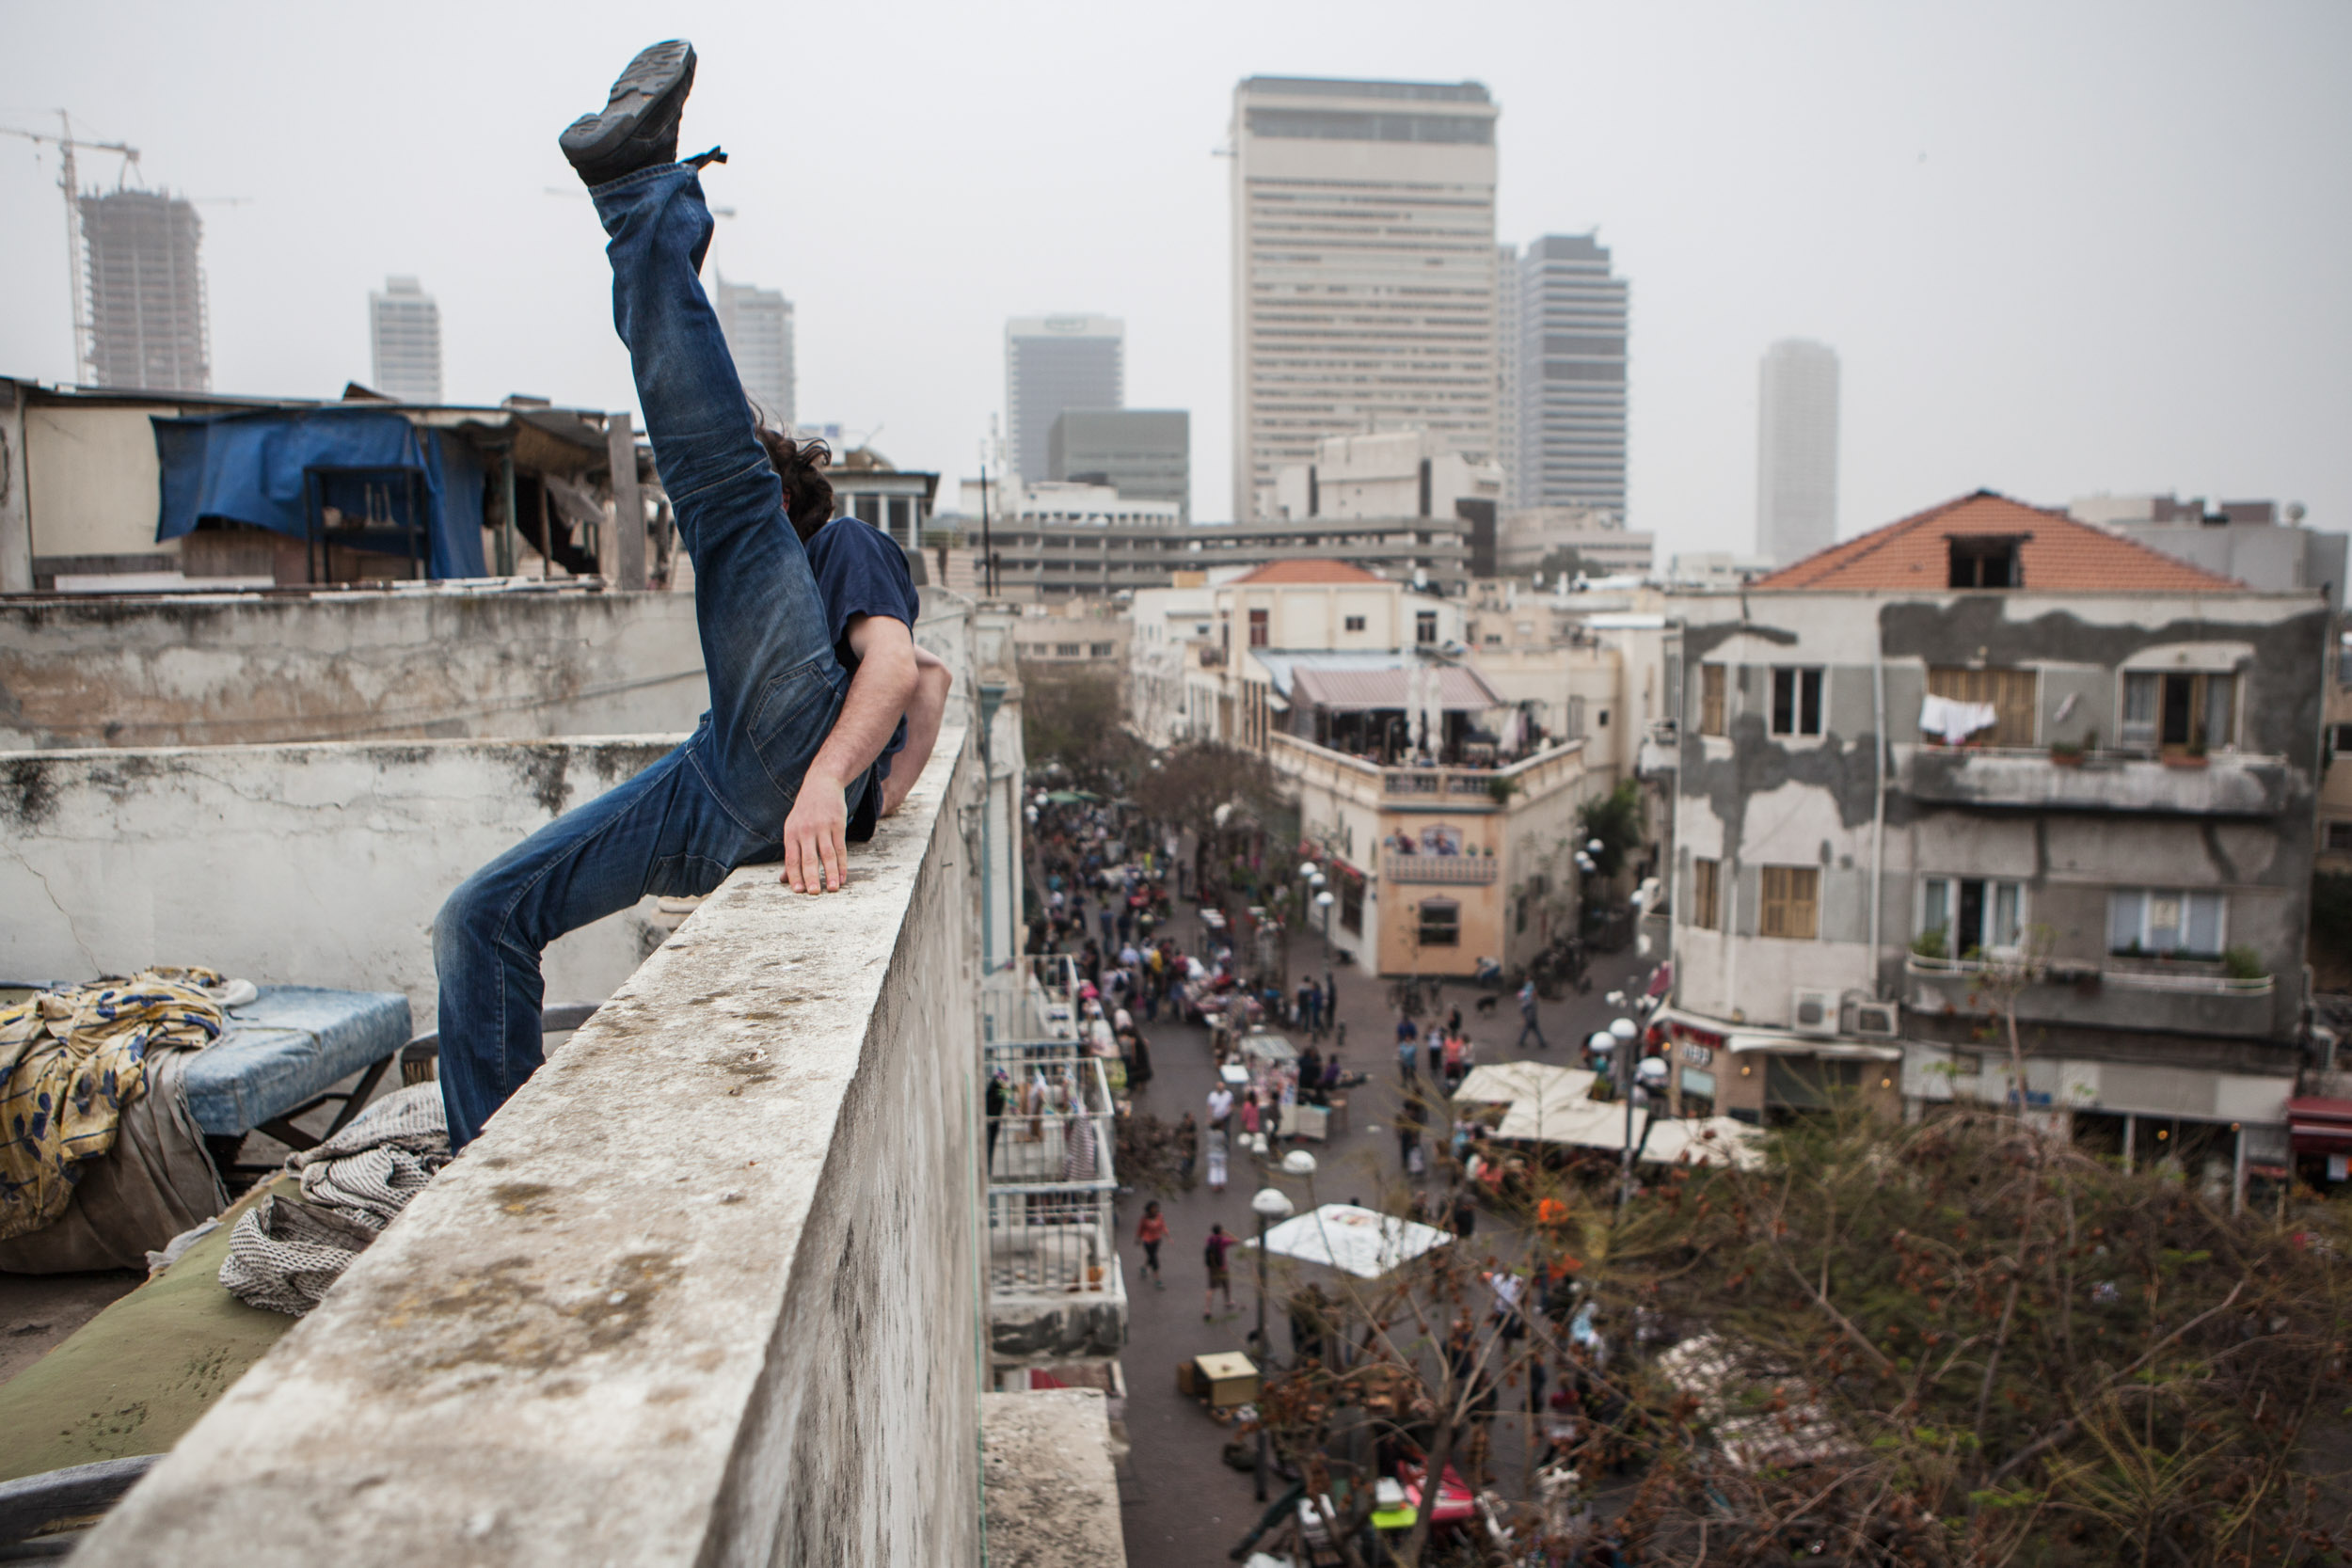 Tim Vranken for Dancers on Rooftops by Ben Hopper (2013)